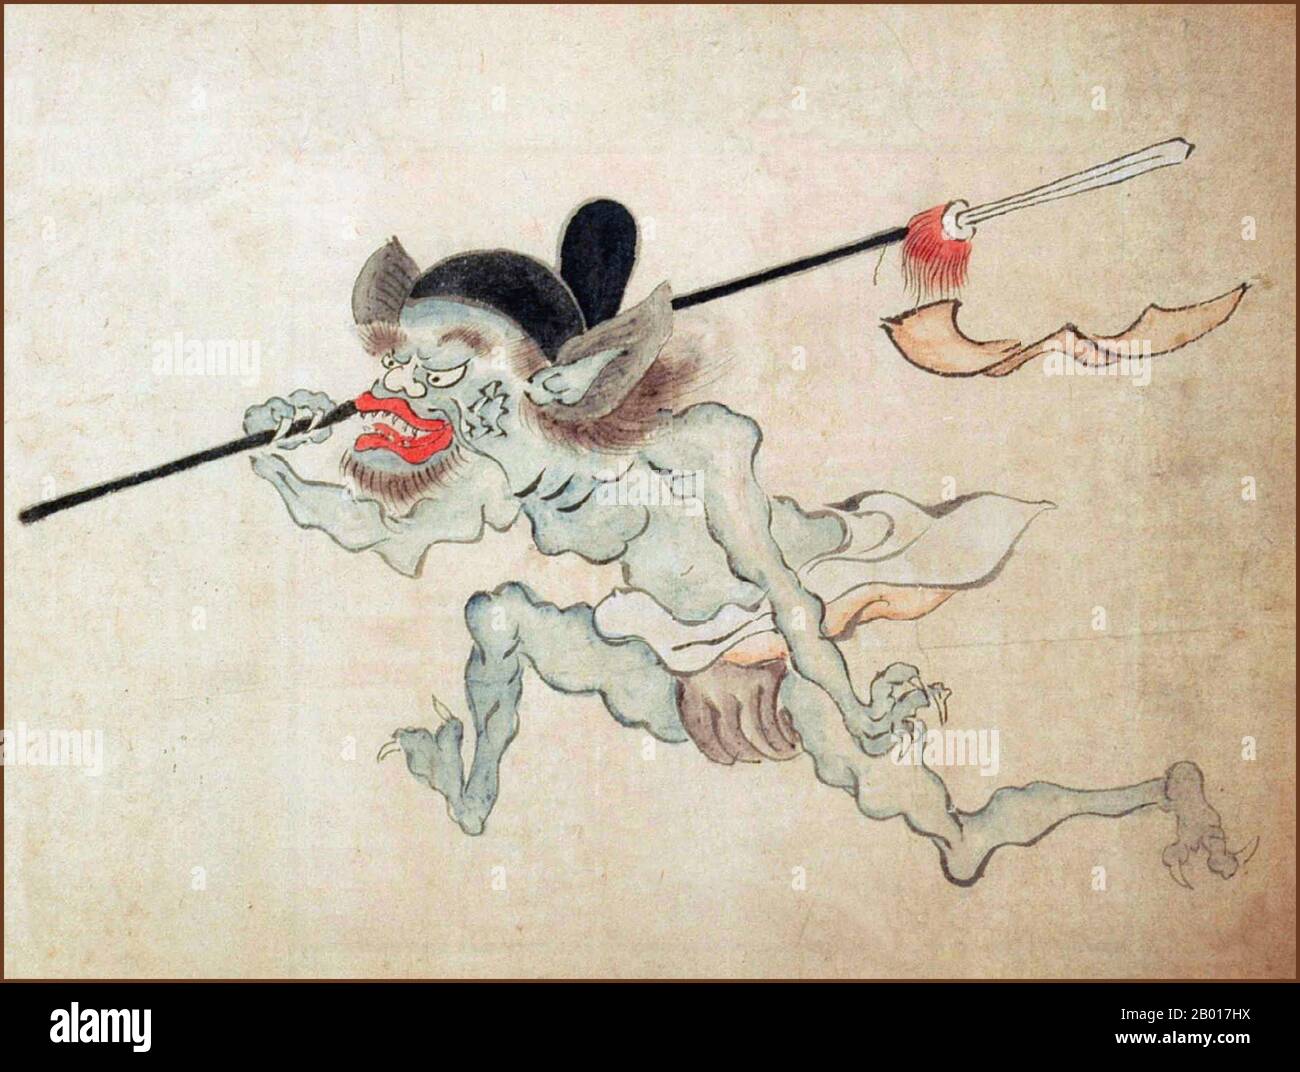 Giappone: 'Hyakki Yako (sfilata notturna di cento demoni)'. Particolare della pittura a graocciola, 19th secolo. Hyakki Yagyo/Hyakki Yako ('Night Parade of One Hundred Demons') è una credenza popolare giapponese. La convinzione sostiene che ogni anno yokai, esseri soprannaturali giapponesi, si porterà in strada durante le notti estive. La processione è talvolta ordinata, mentre altre volte è una sommossa. Chiunque venga attraverso la processione morirà, a meno che non sia protetto da qualche sutra buddista. E' un tema popolare nell'arte visiva giapponese Foto Stock